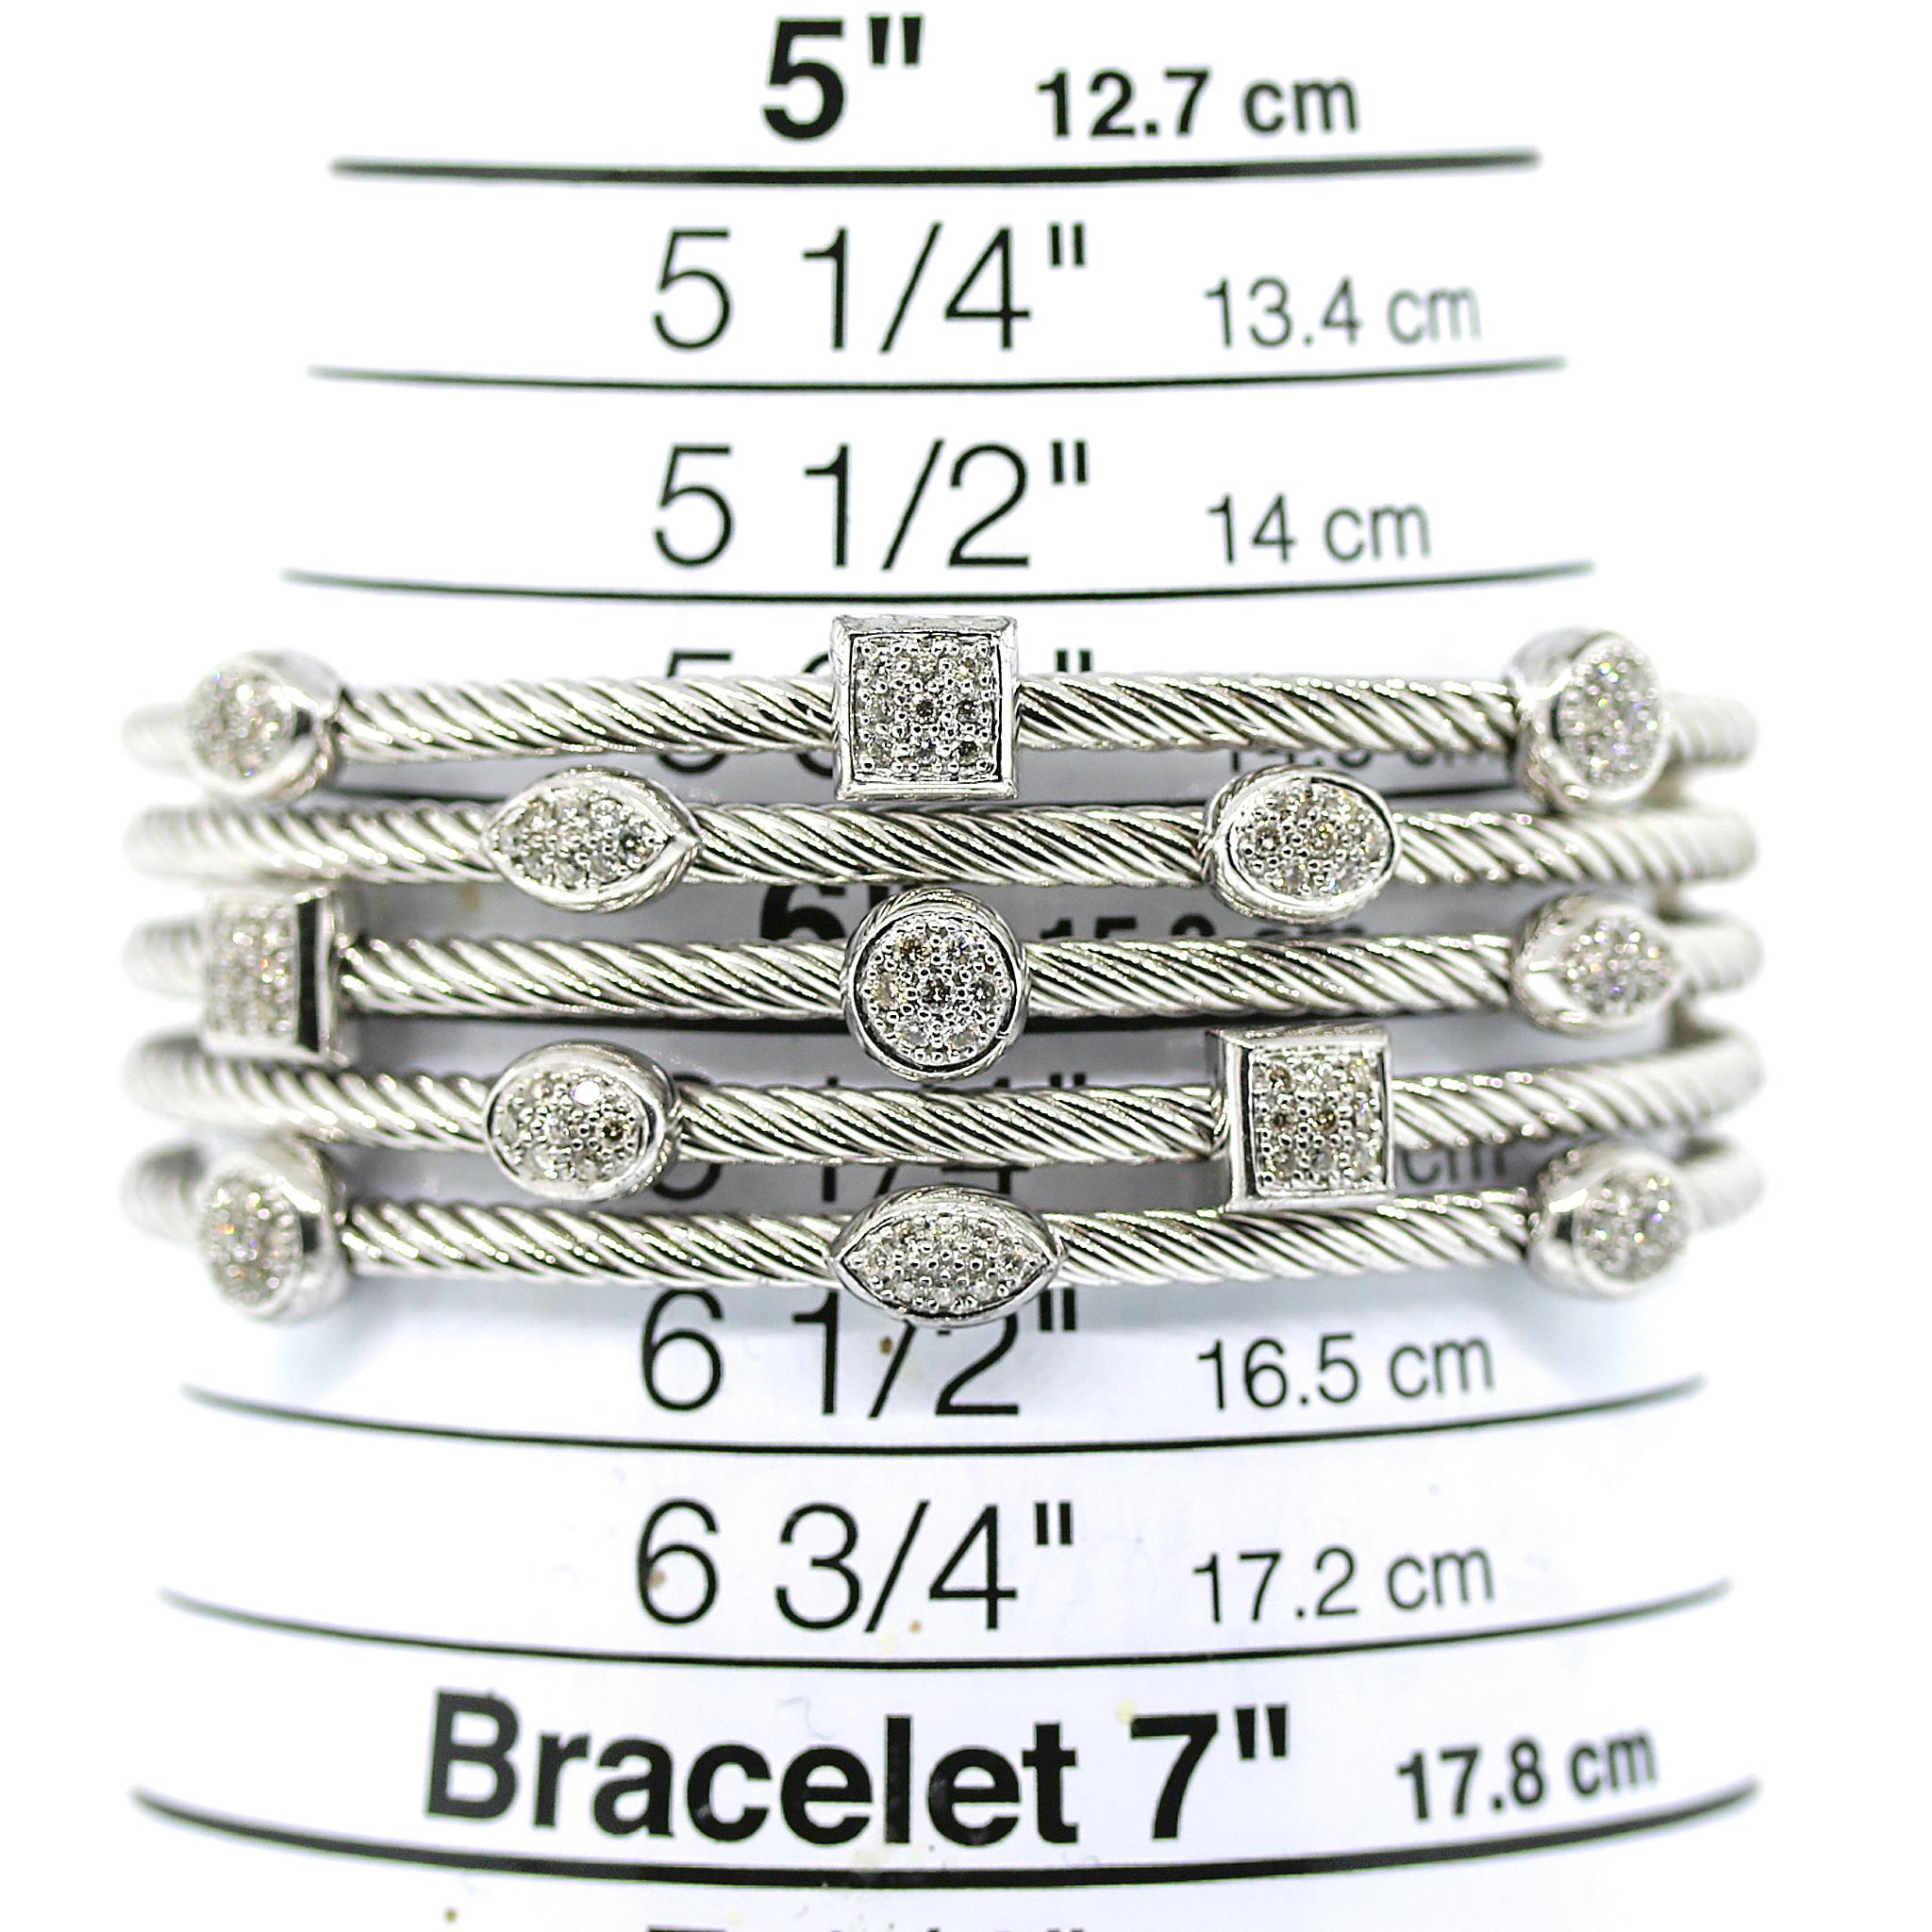 Argenterie sterling
Cinq bracelets en argent sterling, chacun contenant des facettes de diamants pavés
Peut s'adapter à des poignets allant jusqu'à 6,5 pouces.